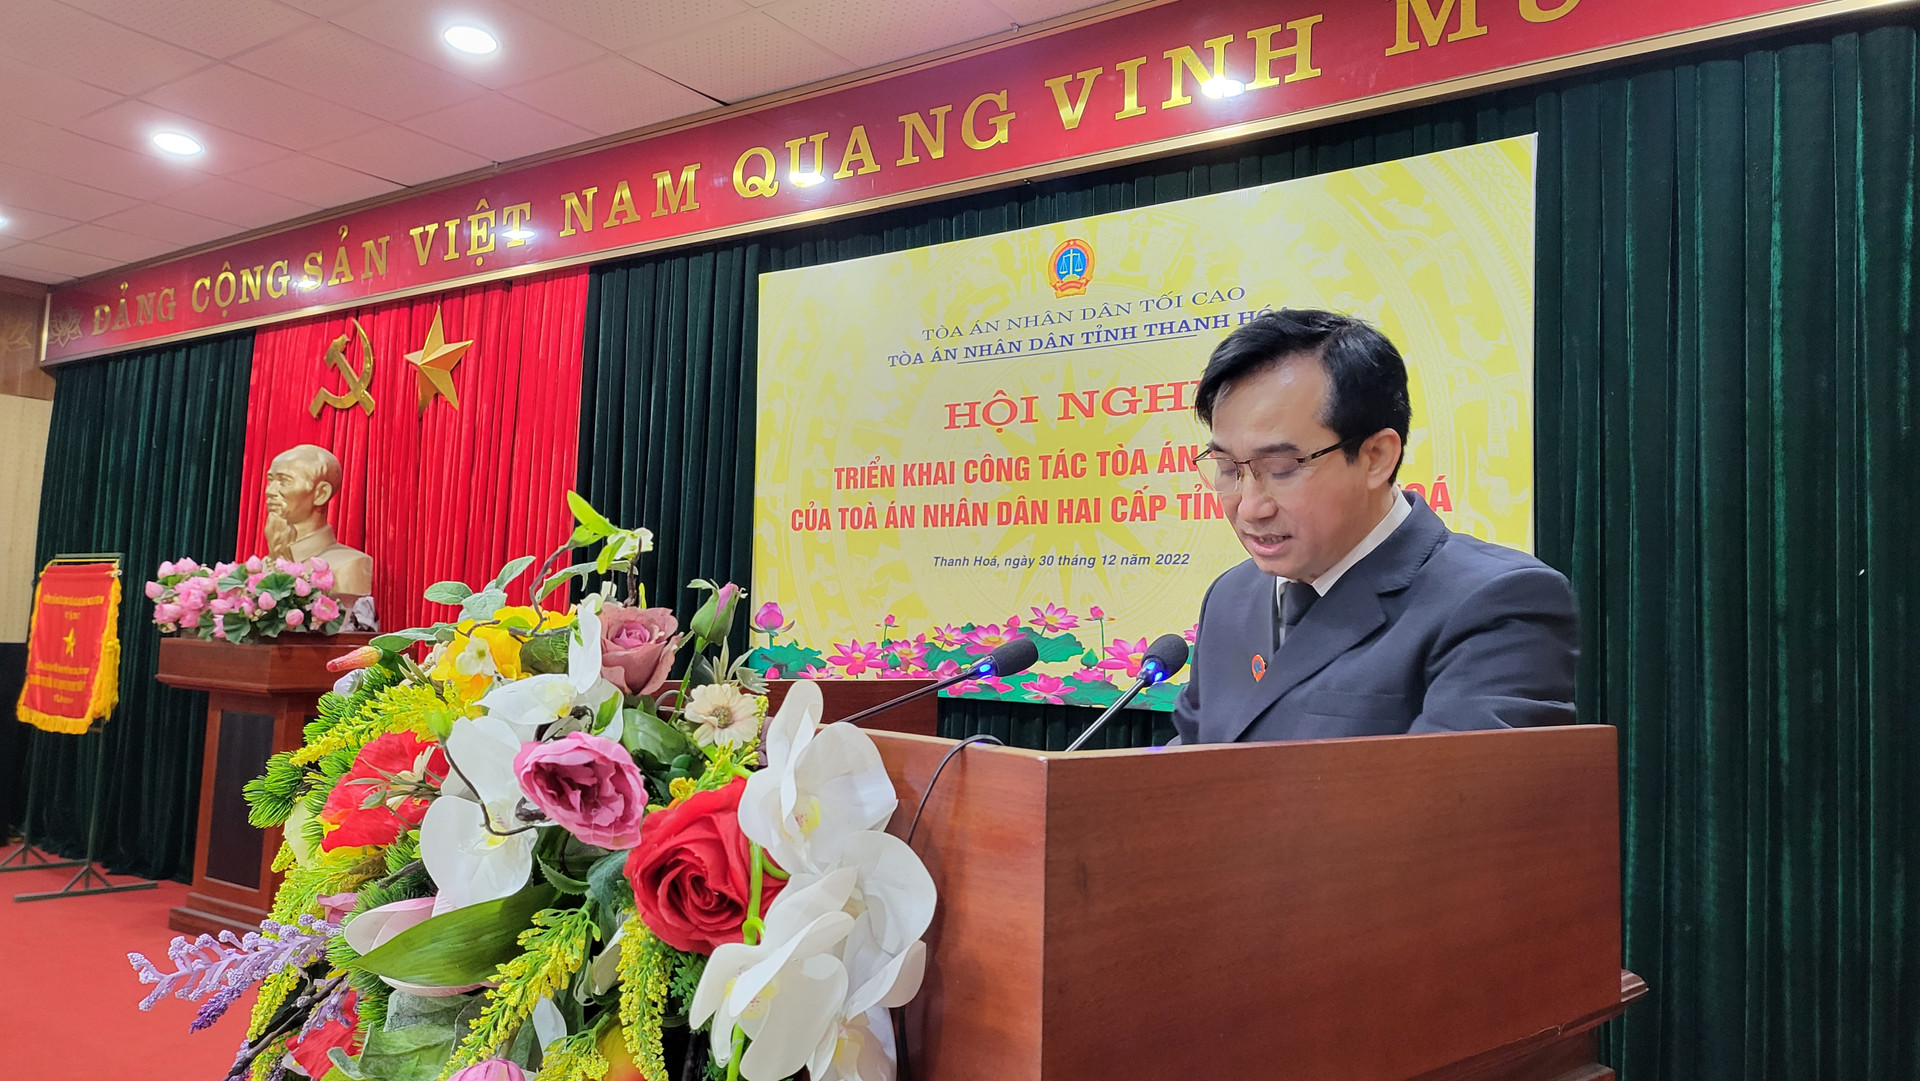 Đồng chí Nguyễn Xuân Huy, Chánh án TAND thành phố Thanh Hóa trình bày Tham luận tại Hội Nghị